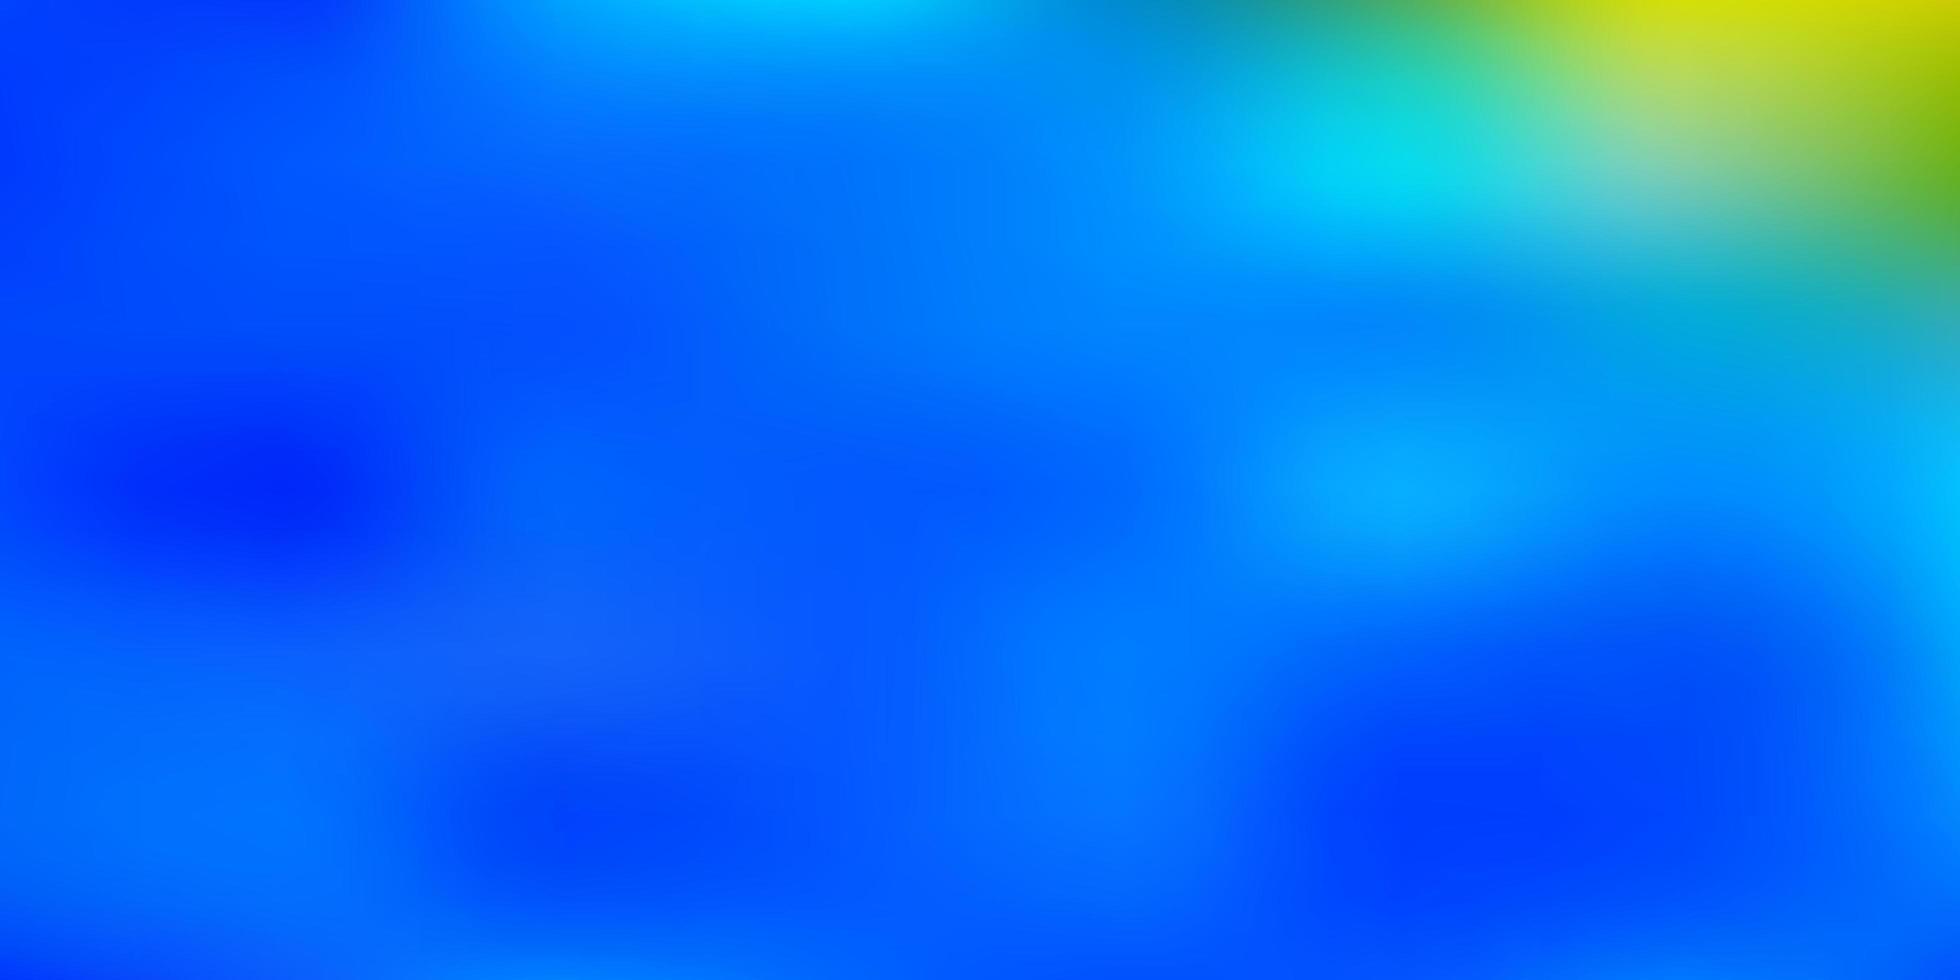 Light blue, yellow blur background. 1750892 Vector Art at Vecteezy